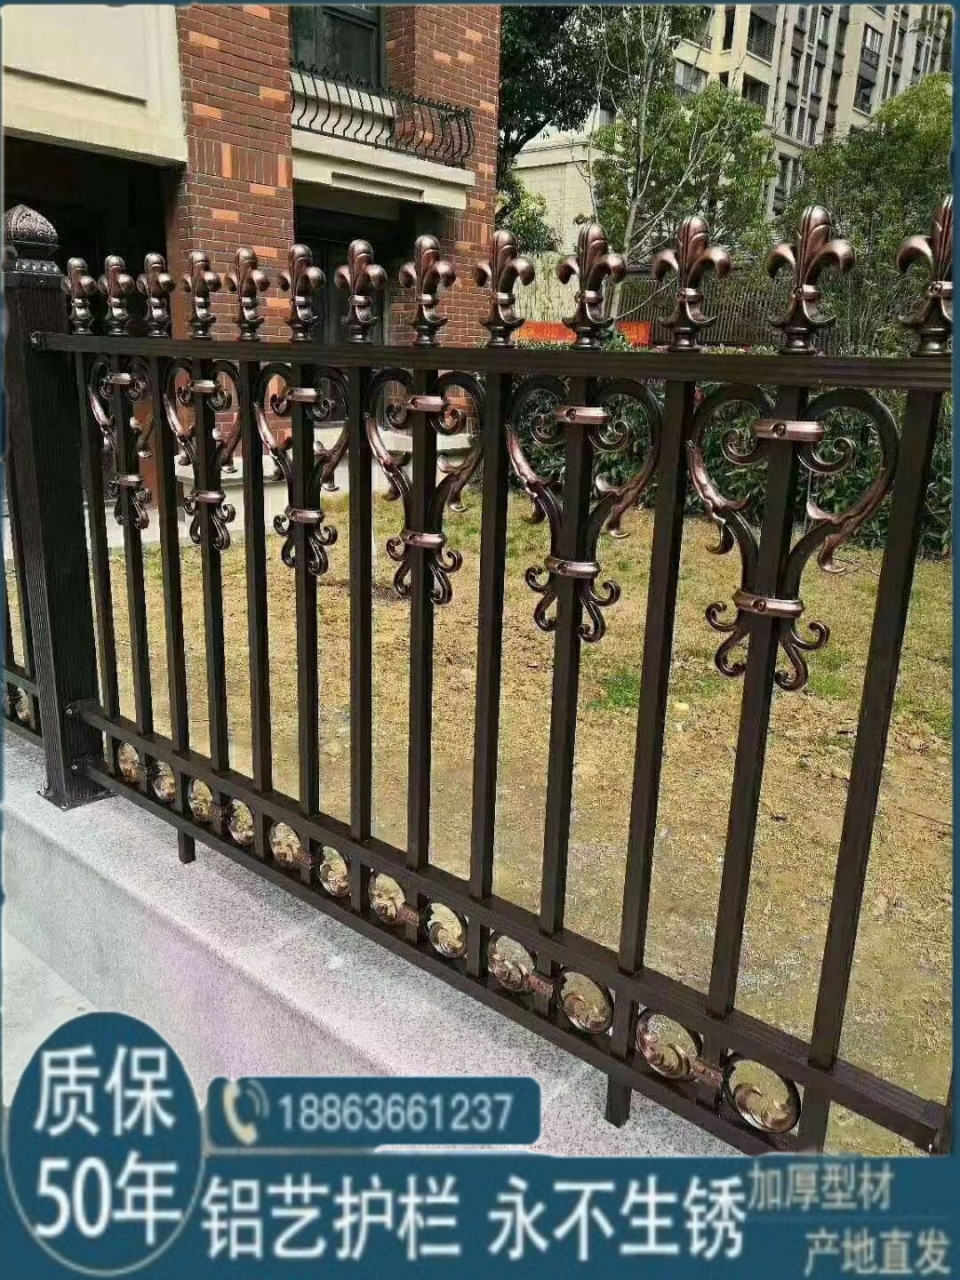 铝艺护栏铝合金围墙围栏栅栏铁艺锌钢户外阳台花园别墅庭院护栏门